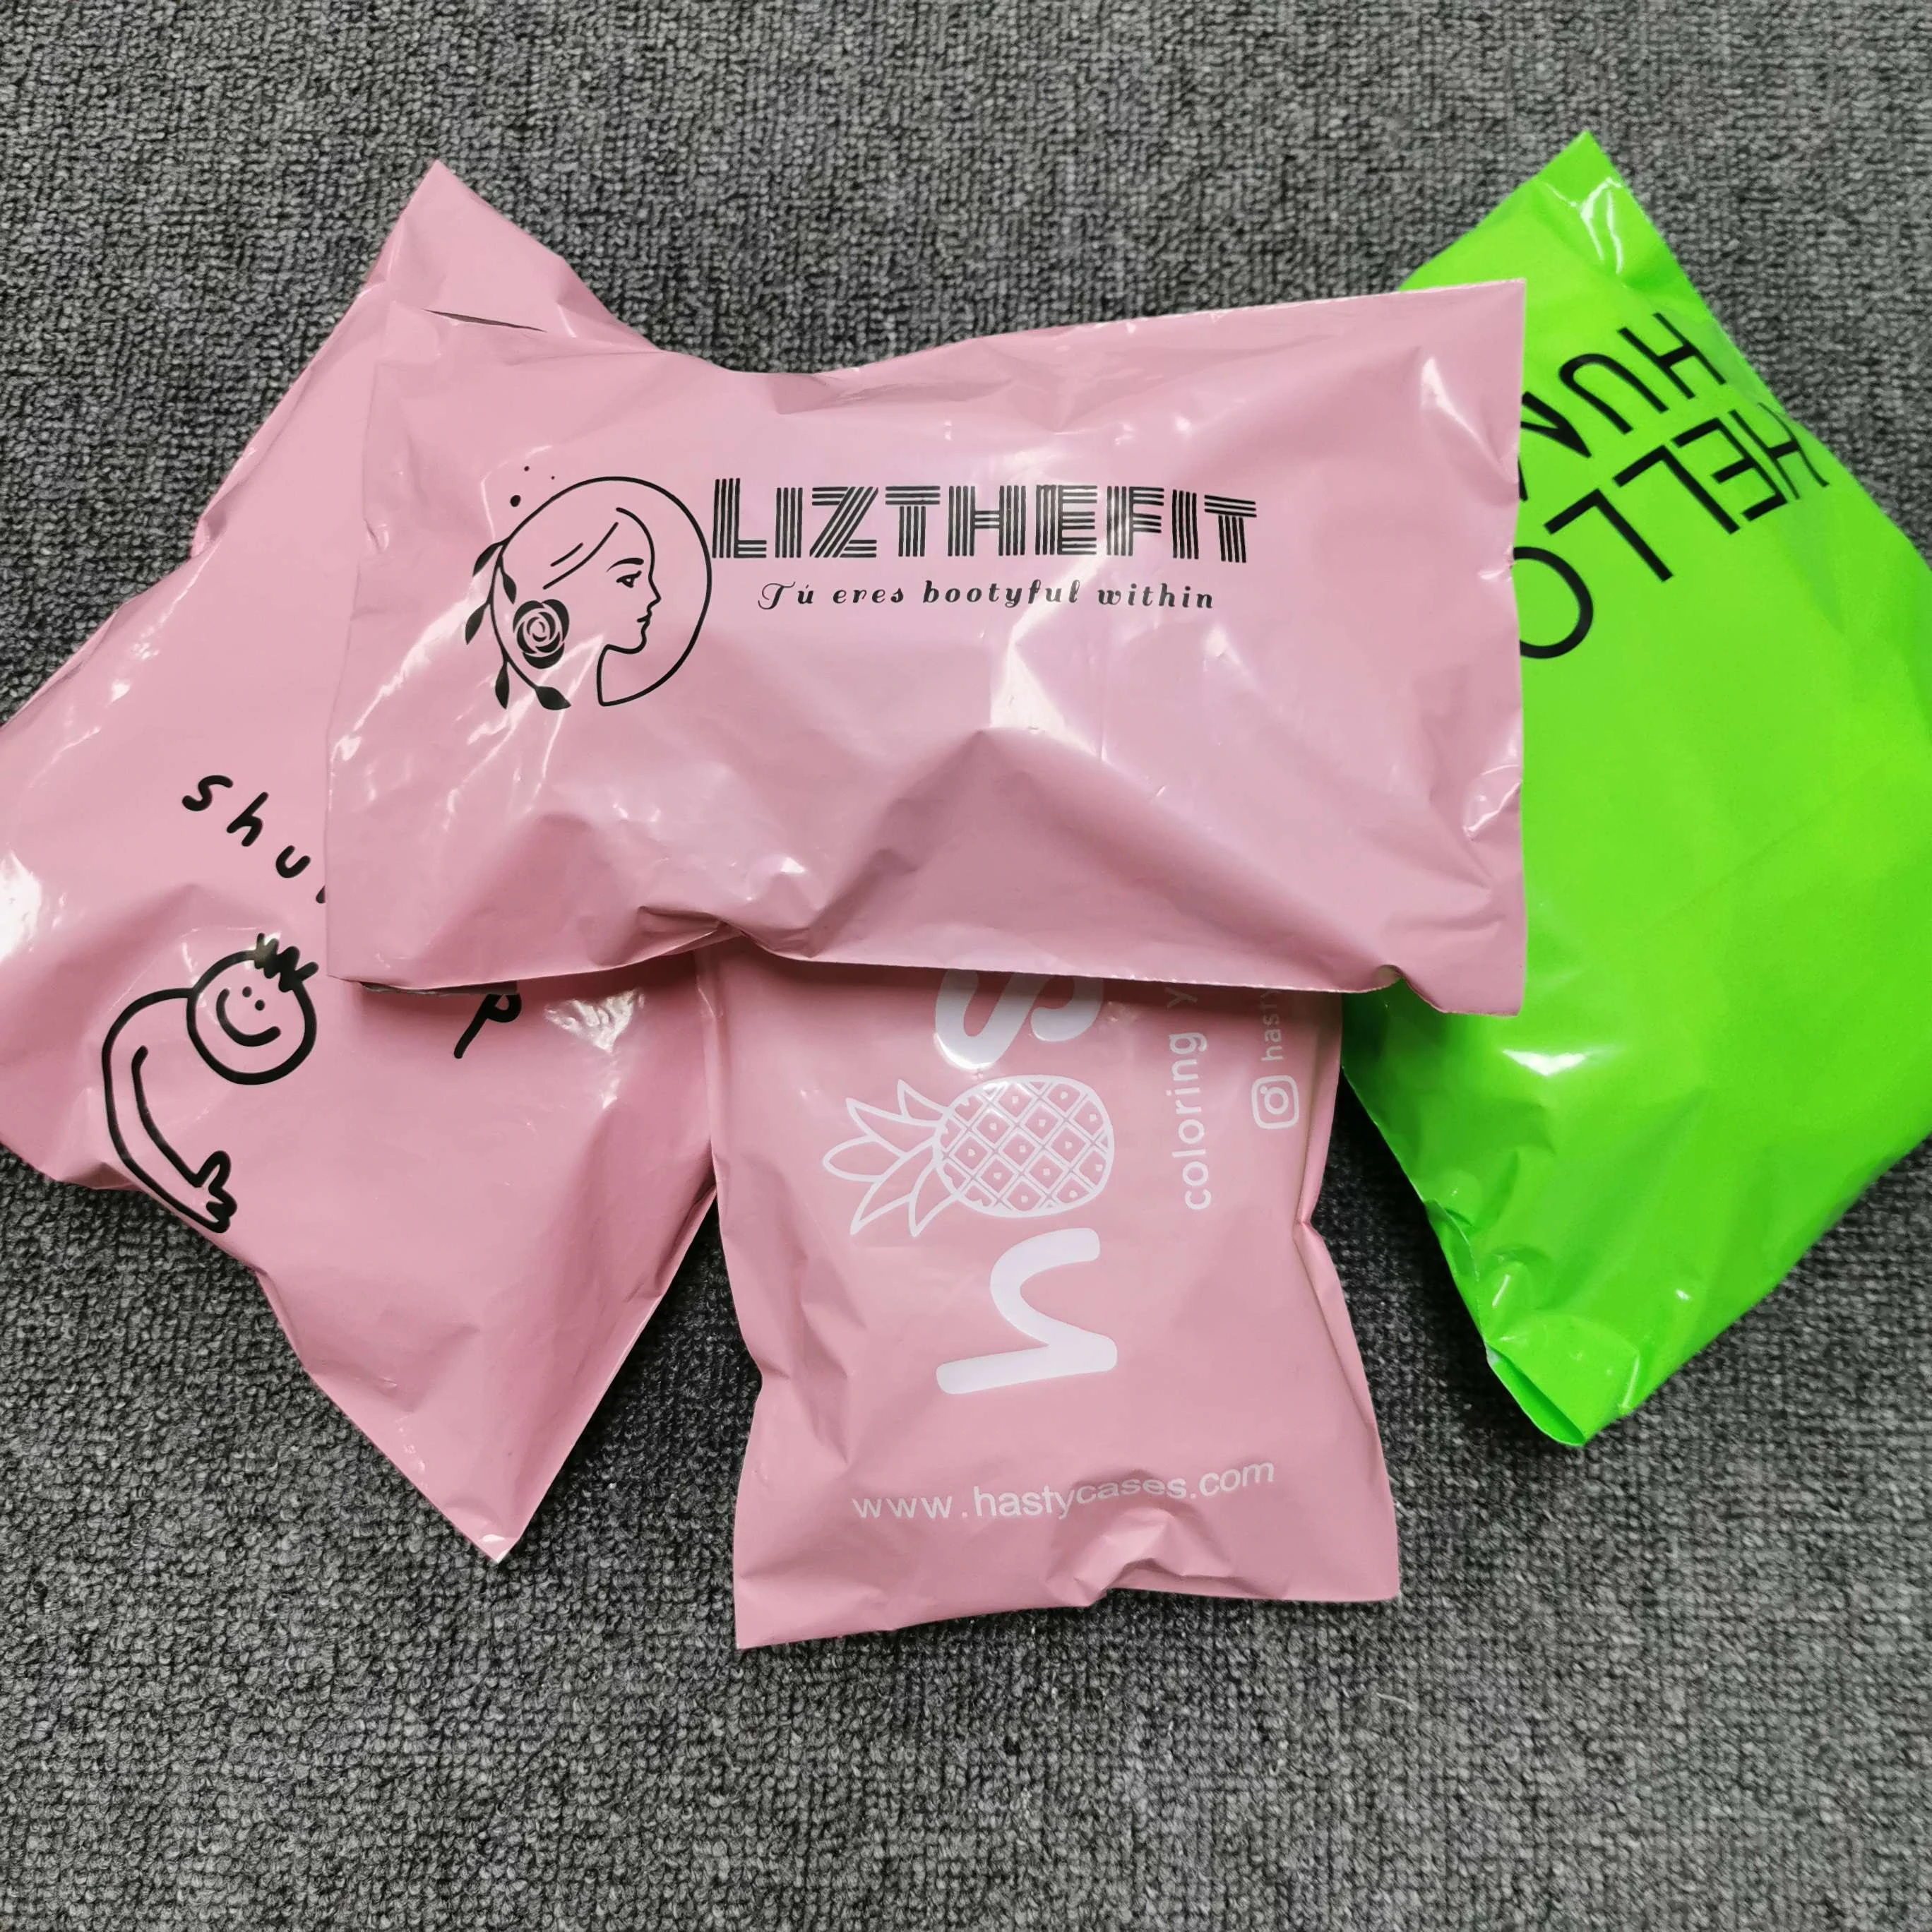 Custom plastic mailing bag